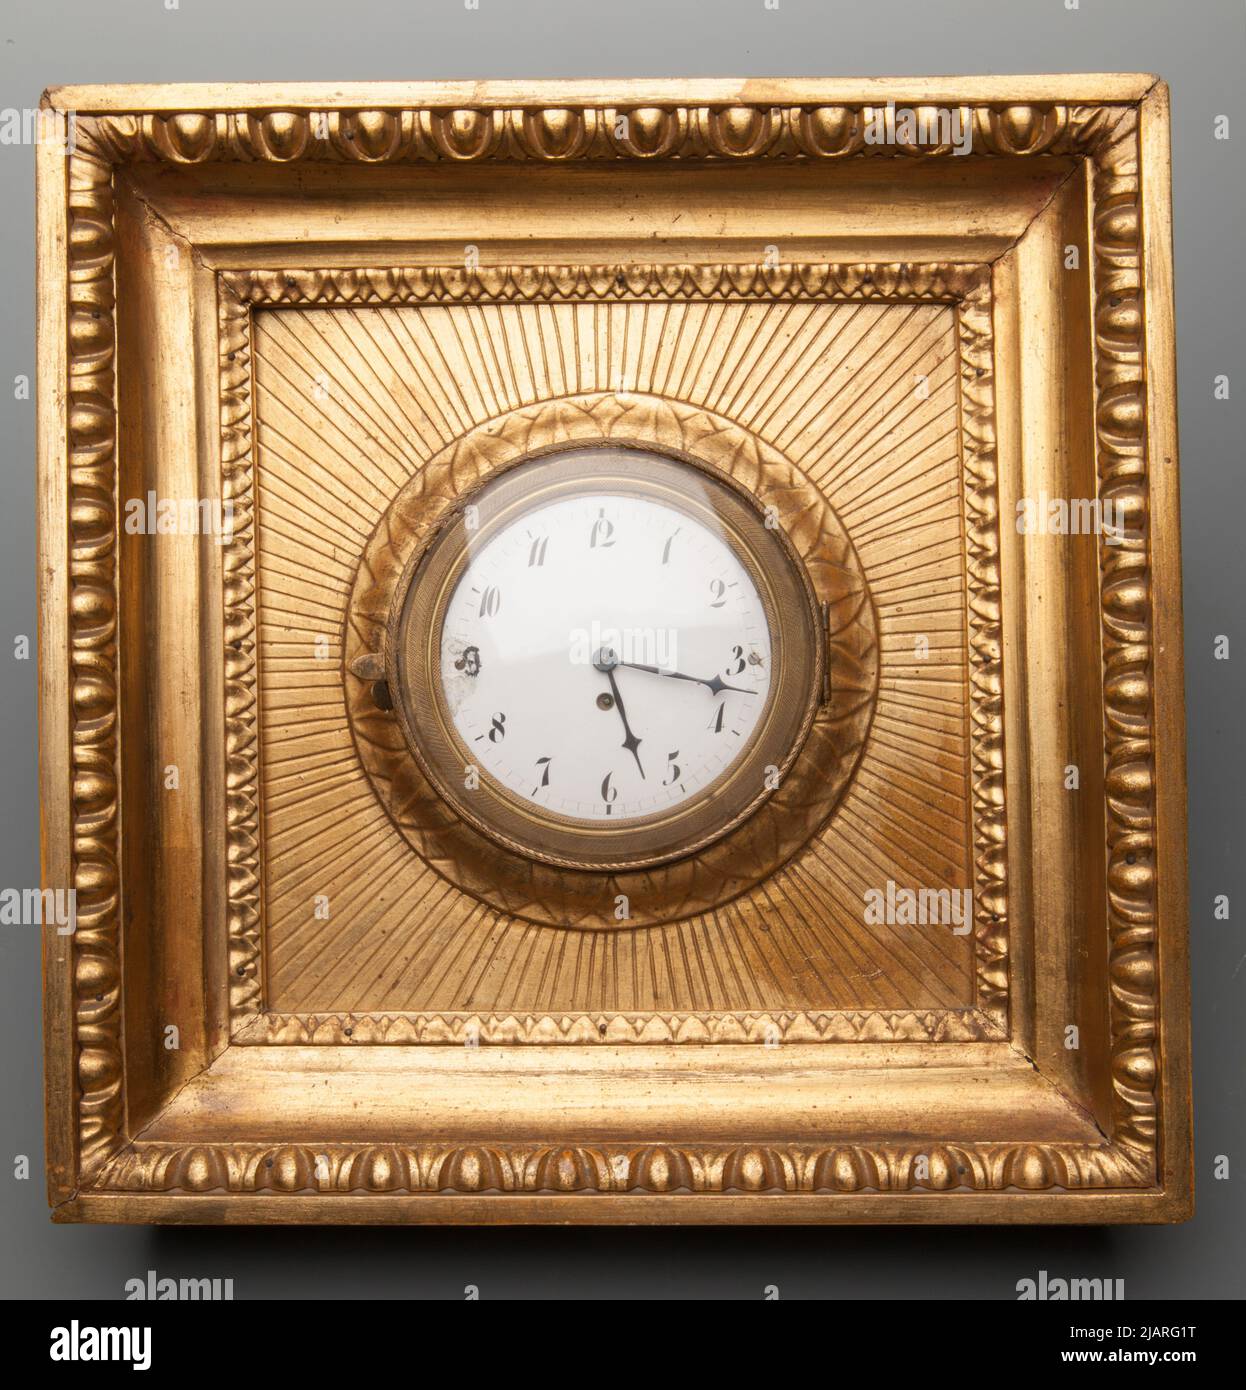 Wall clock Firma: Breguet et fils Stock Photo - Alamy